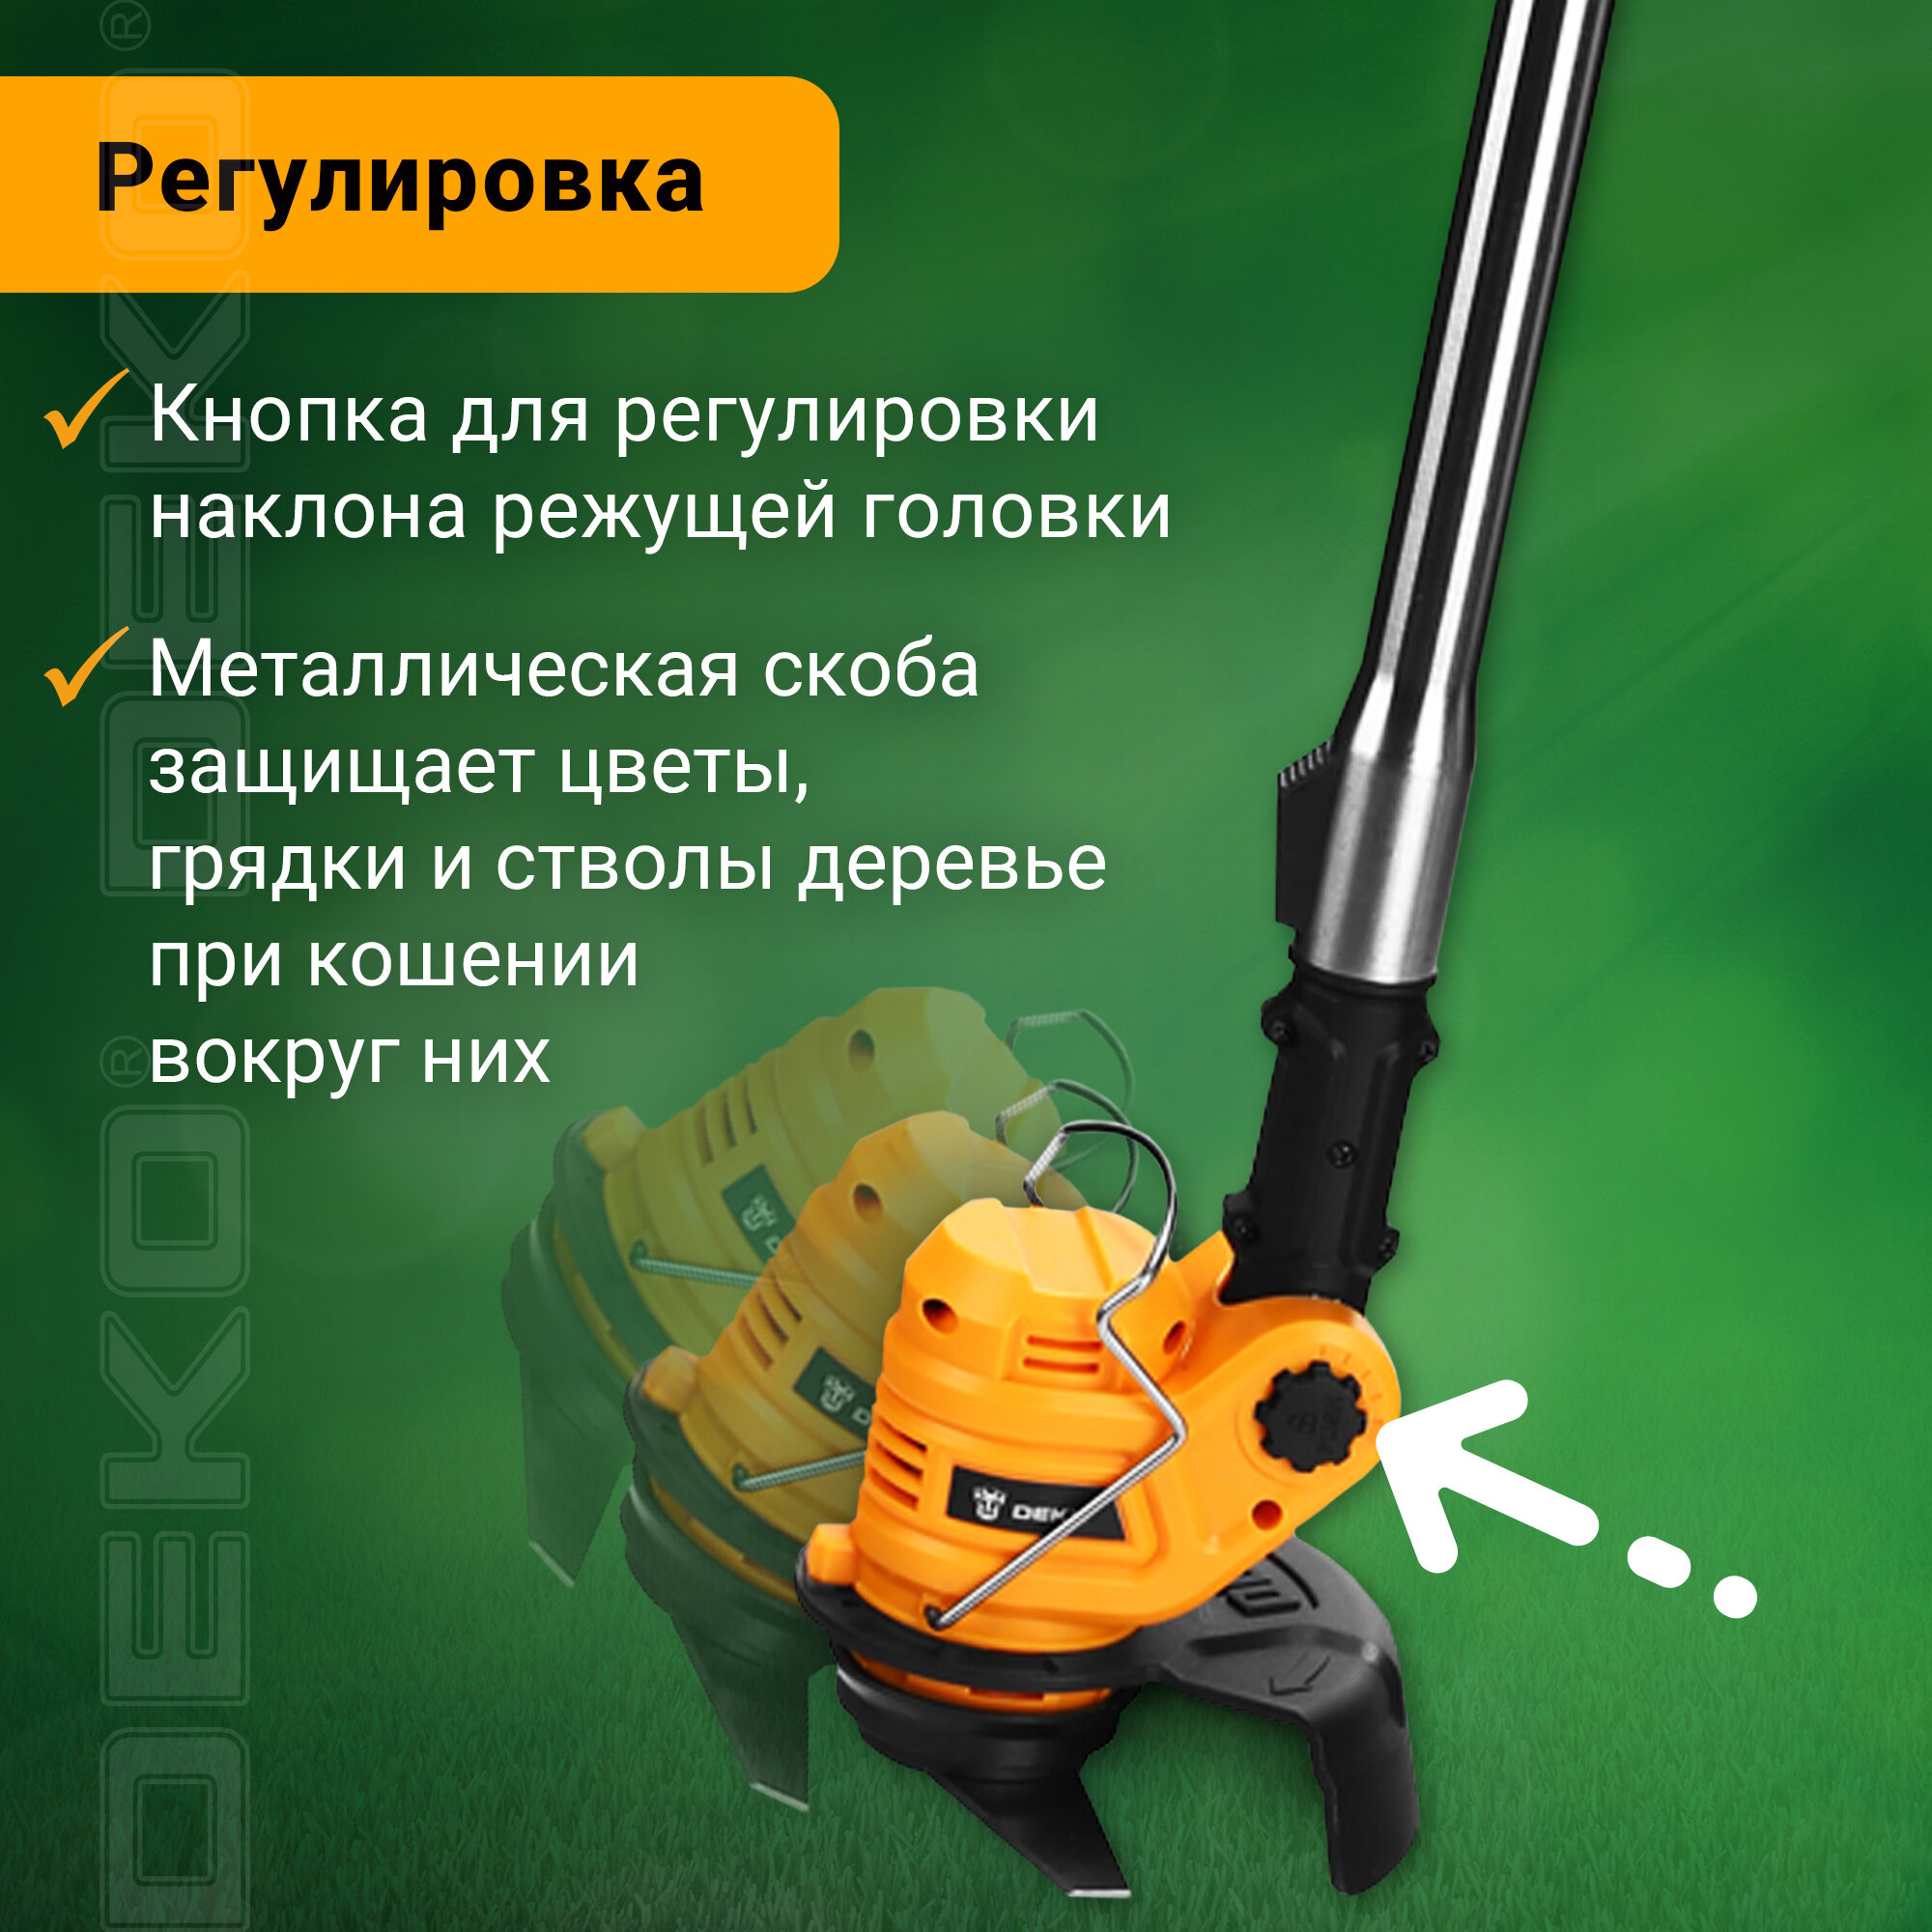 Триммер аккумуляторный DEKO DKTR21, 2 аккумулятора*2.0Ач